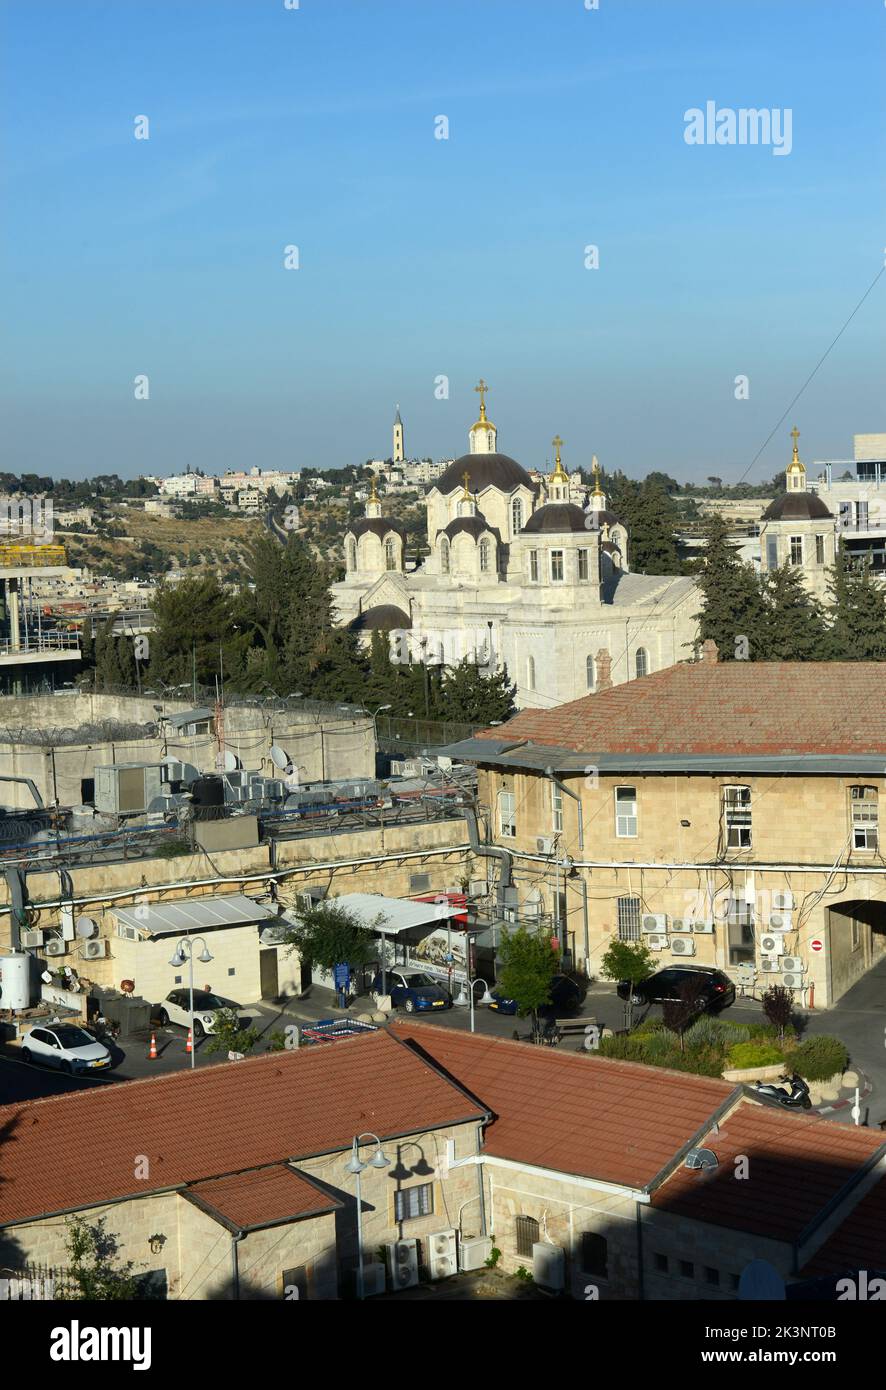 Blick auf die russisch-orthodoxe Kathedrale der Heiligen dreifaltigkeit im russischen Gelände in Westjerusalem und die Himmelfahrtskirche auf dem Ölberg Stockfoto